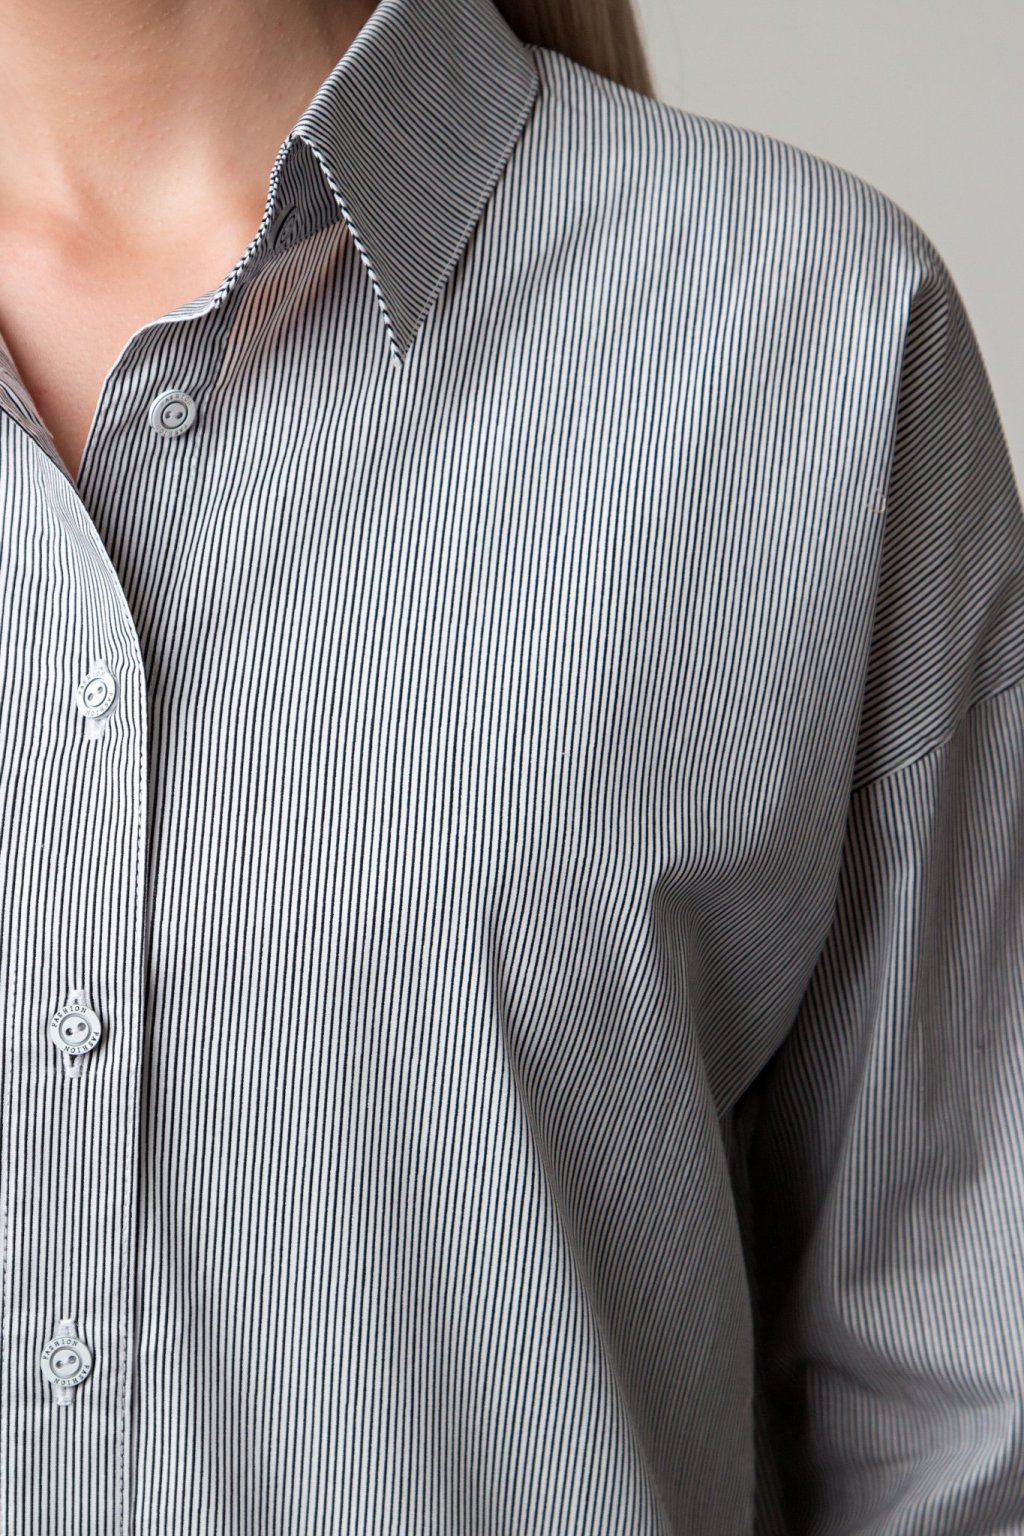 Рубашка хлопок в мелкую полоску (Б-149-3) - 9